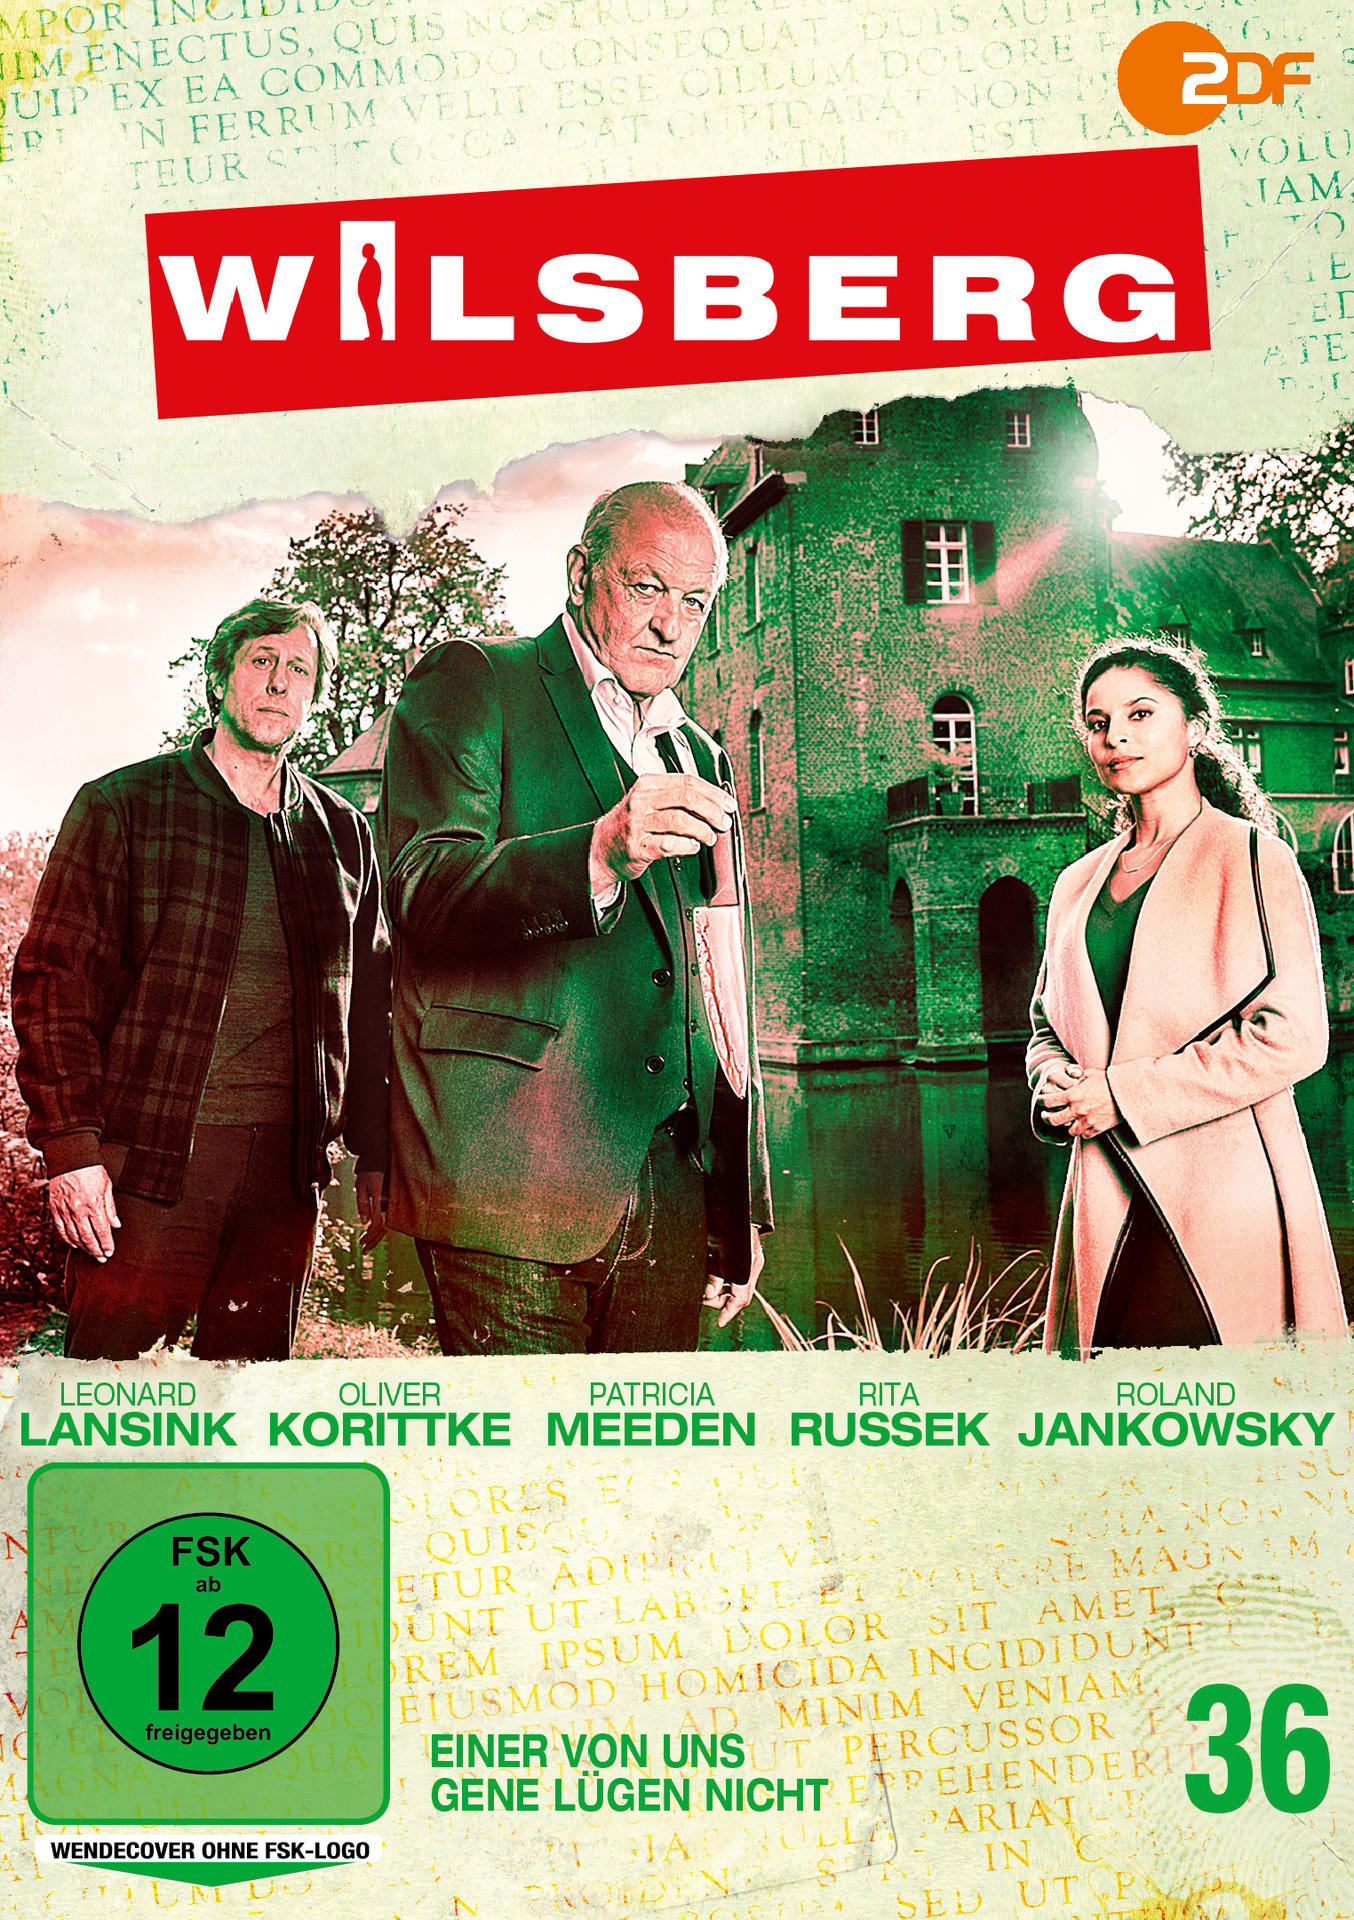 Wilsberg 36: Einer nicht DVD Gene von lügen uns 